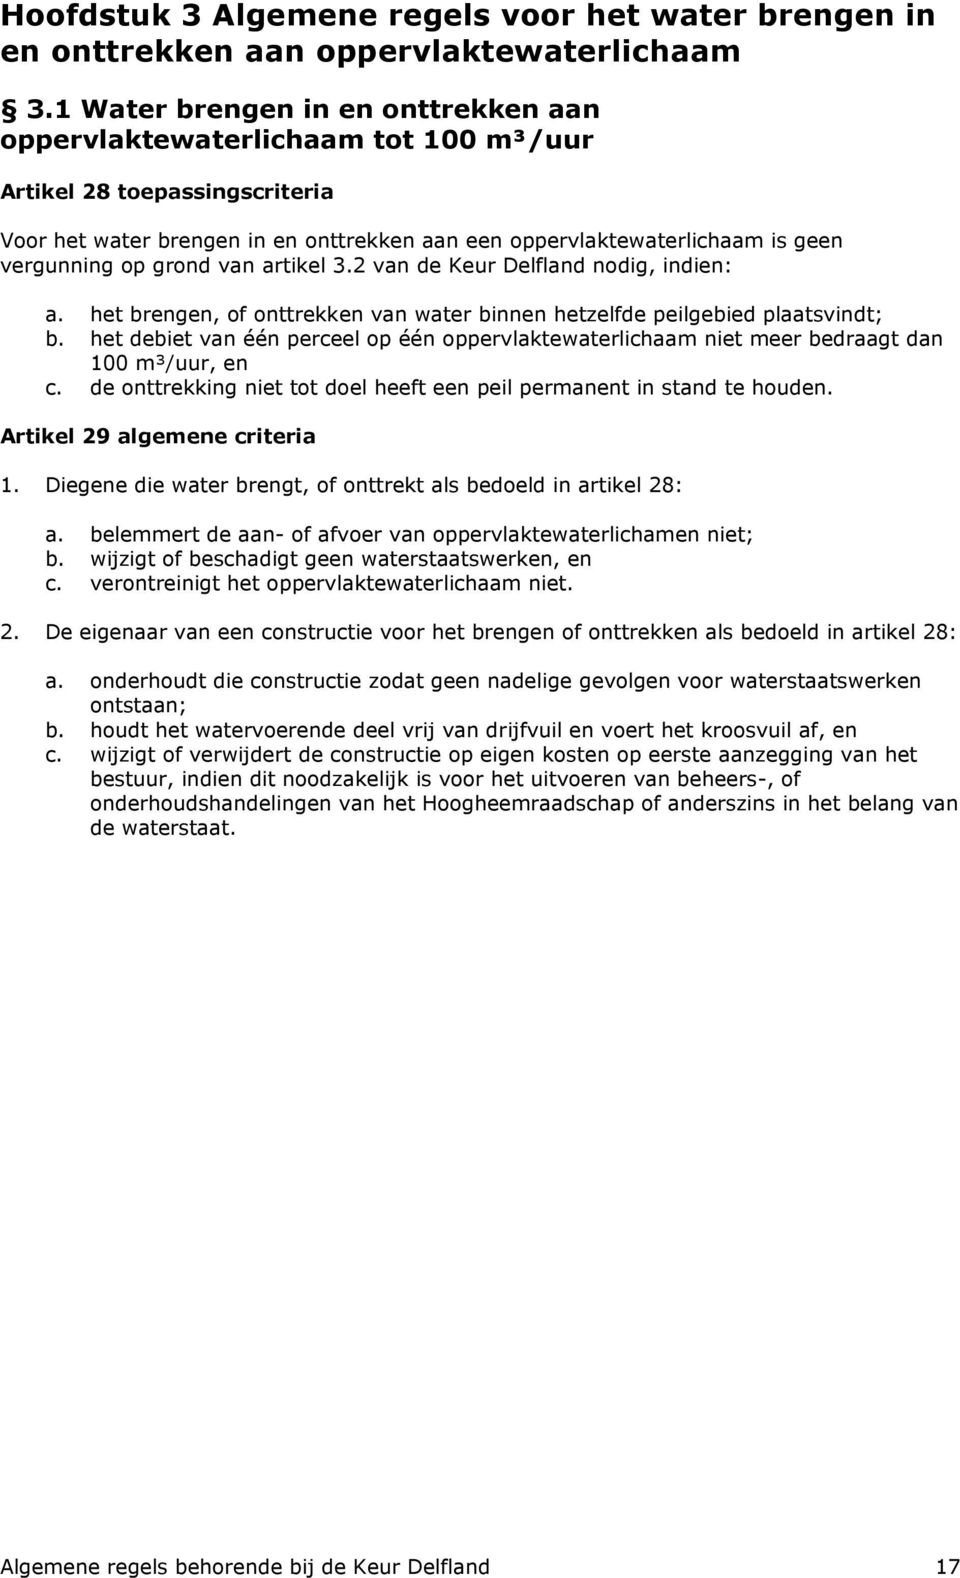 op grond van artikel 3.2 van de Keur Delfland nodig, indien: a. het brengen, of onttrekken van water binnen hetzelfde peilgebied plaatsvindt; b.